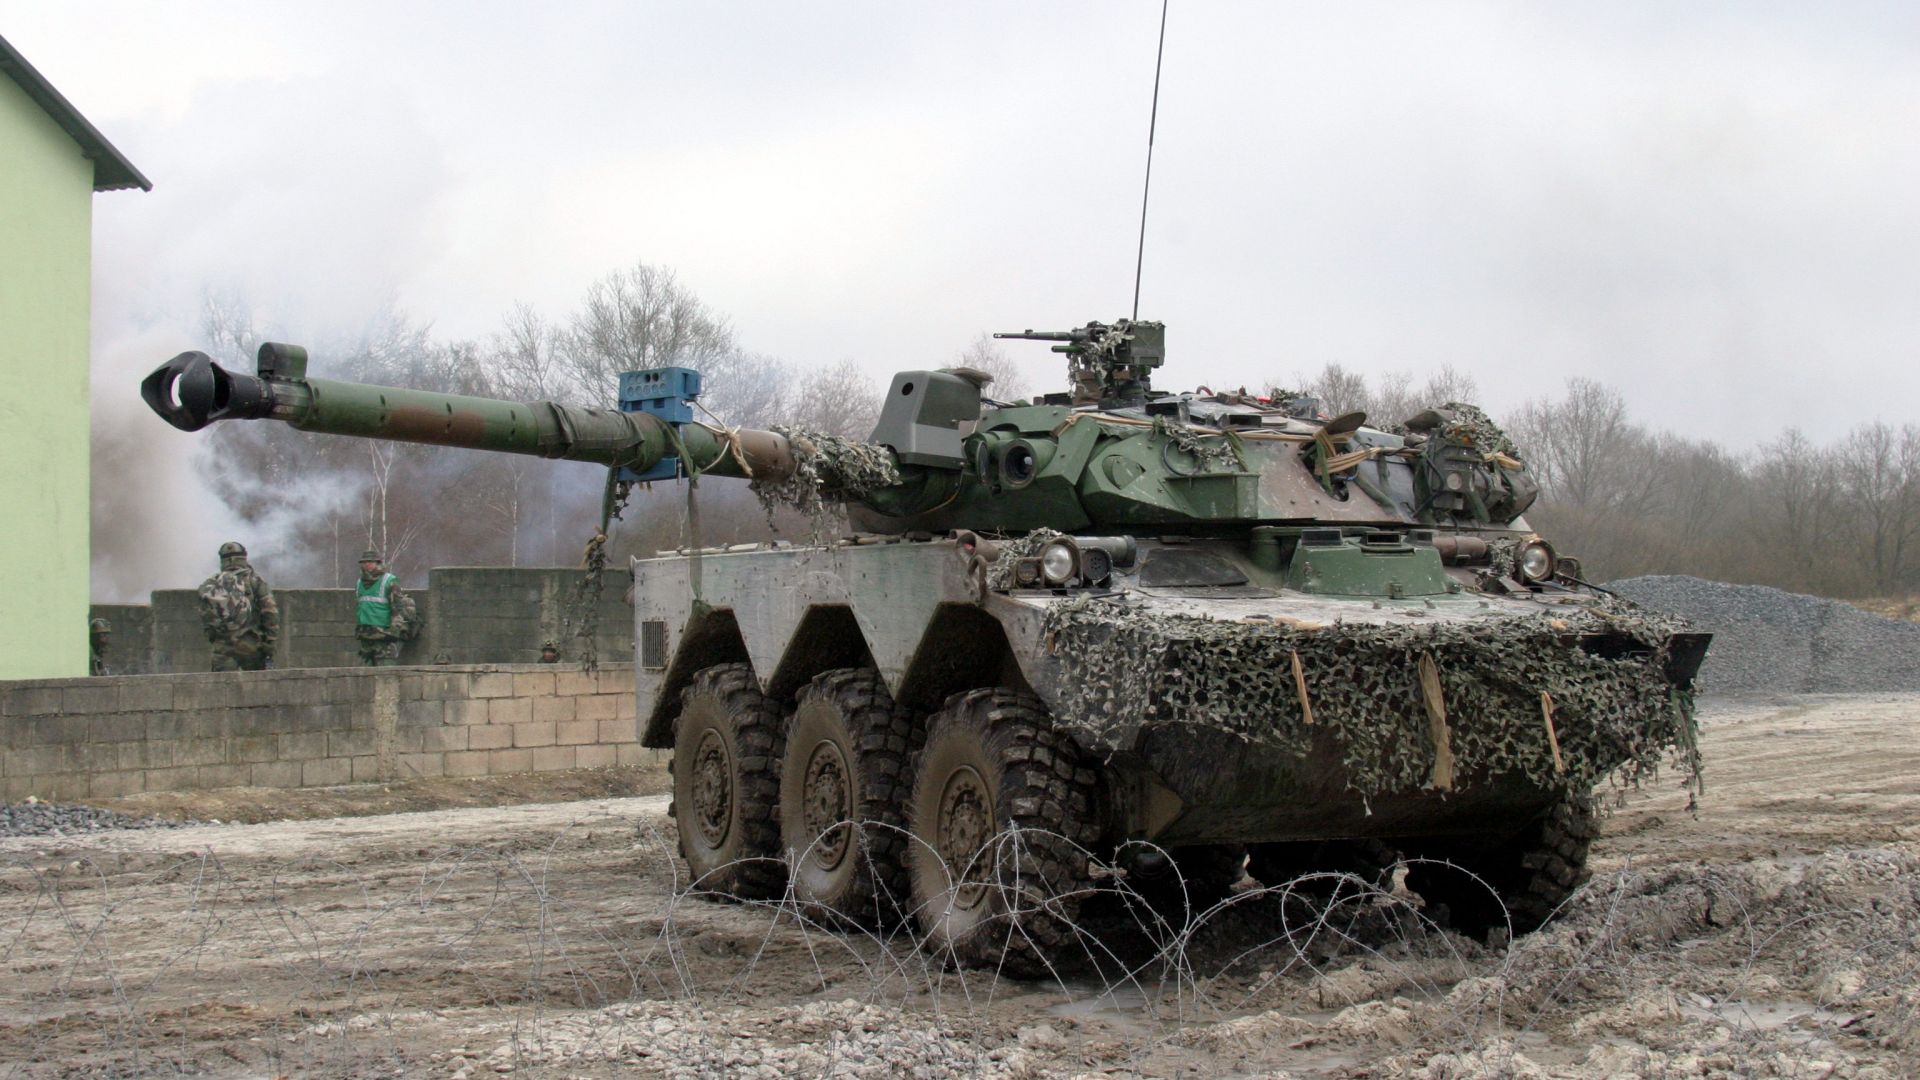 Танк AMX-10 RC в Украине, AMX-10 RC in Ukraine, 4K (horizontal)